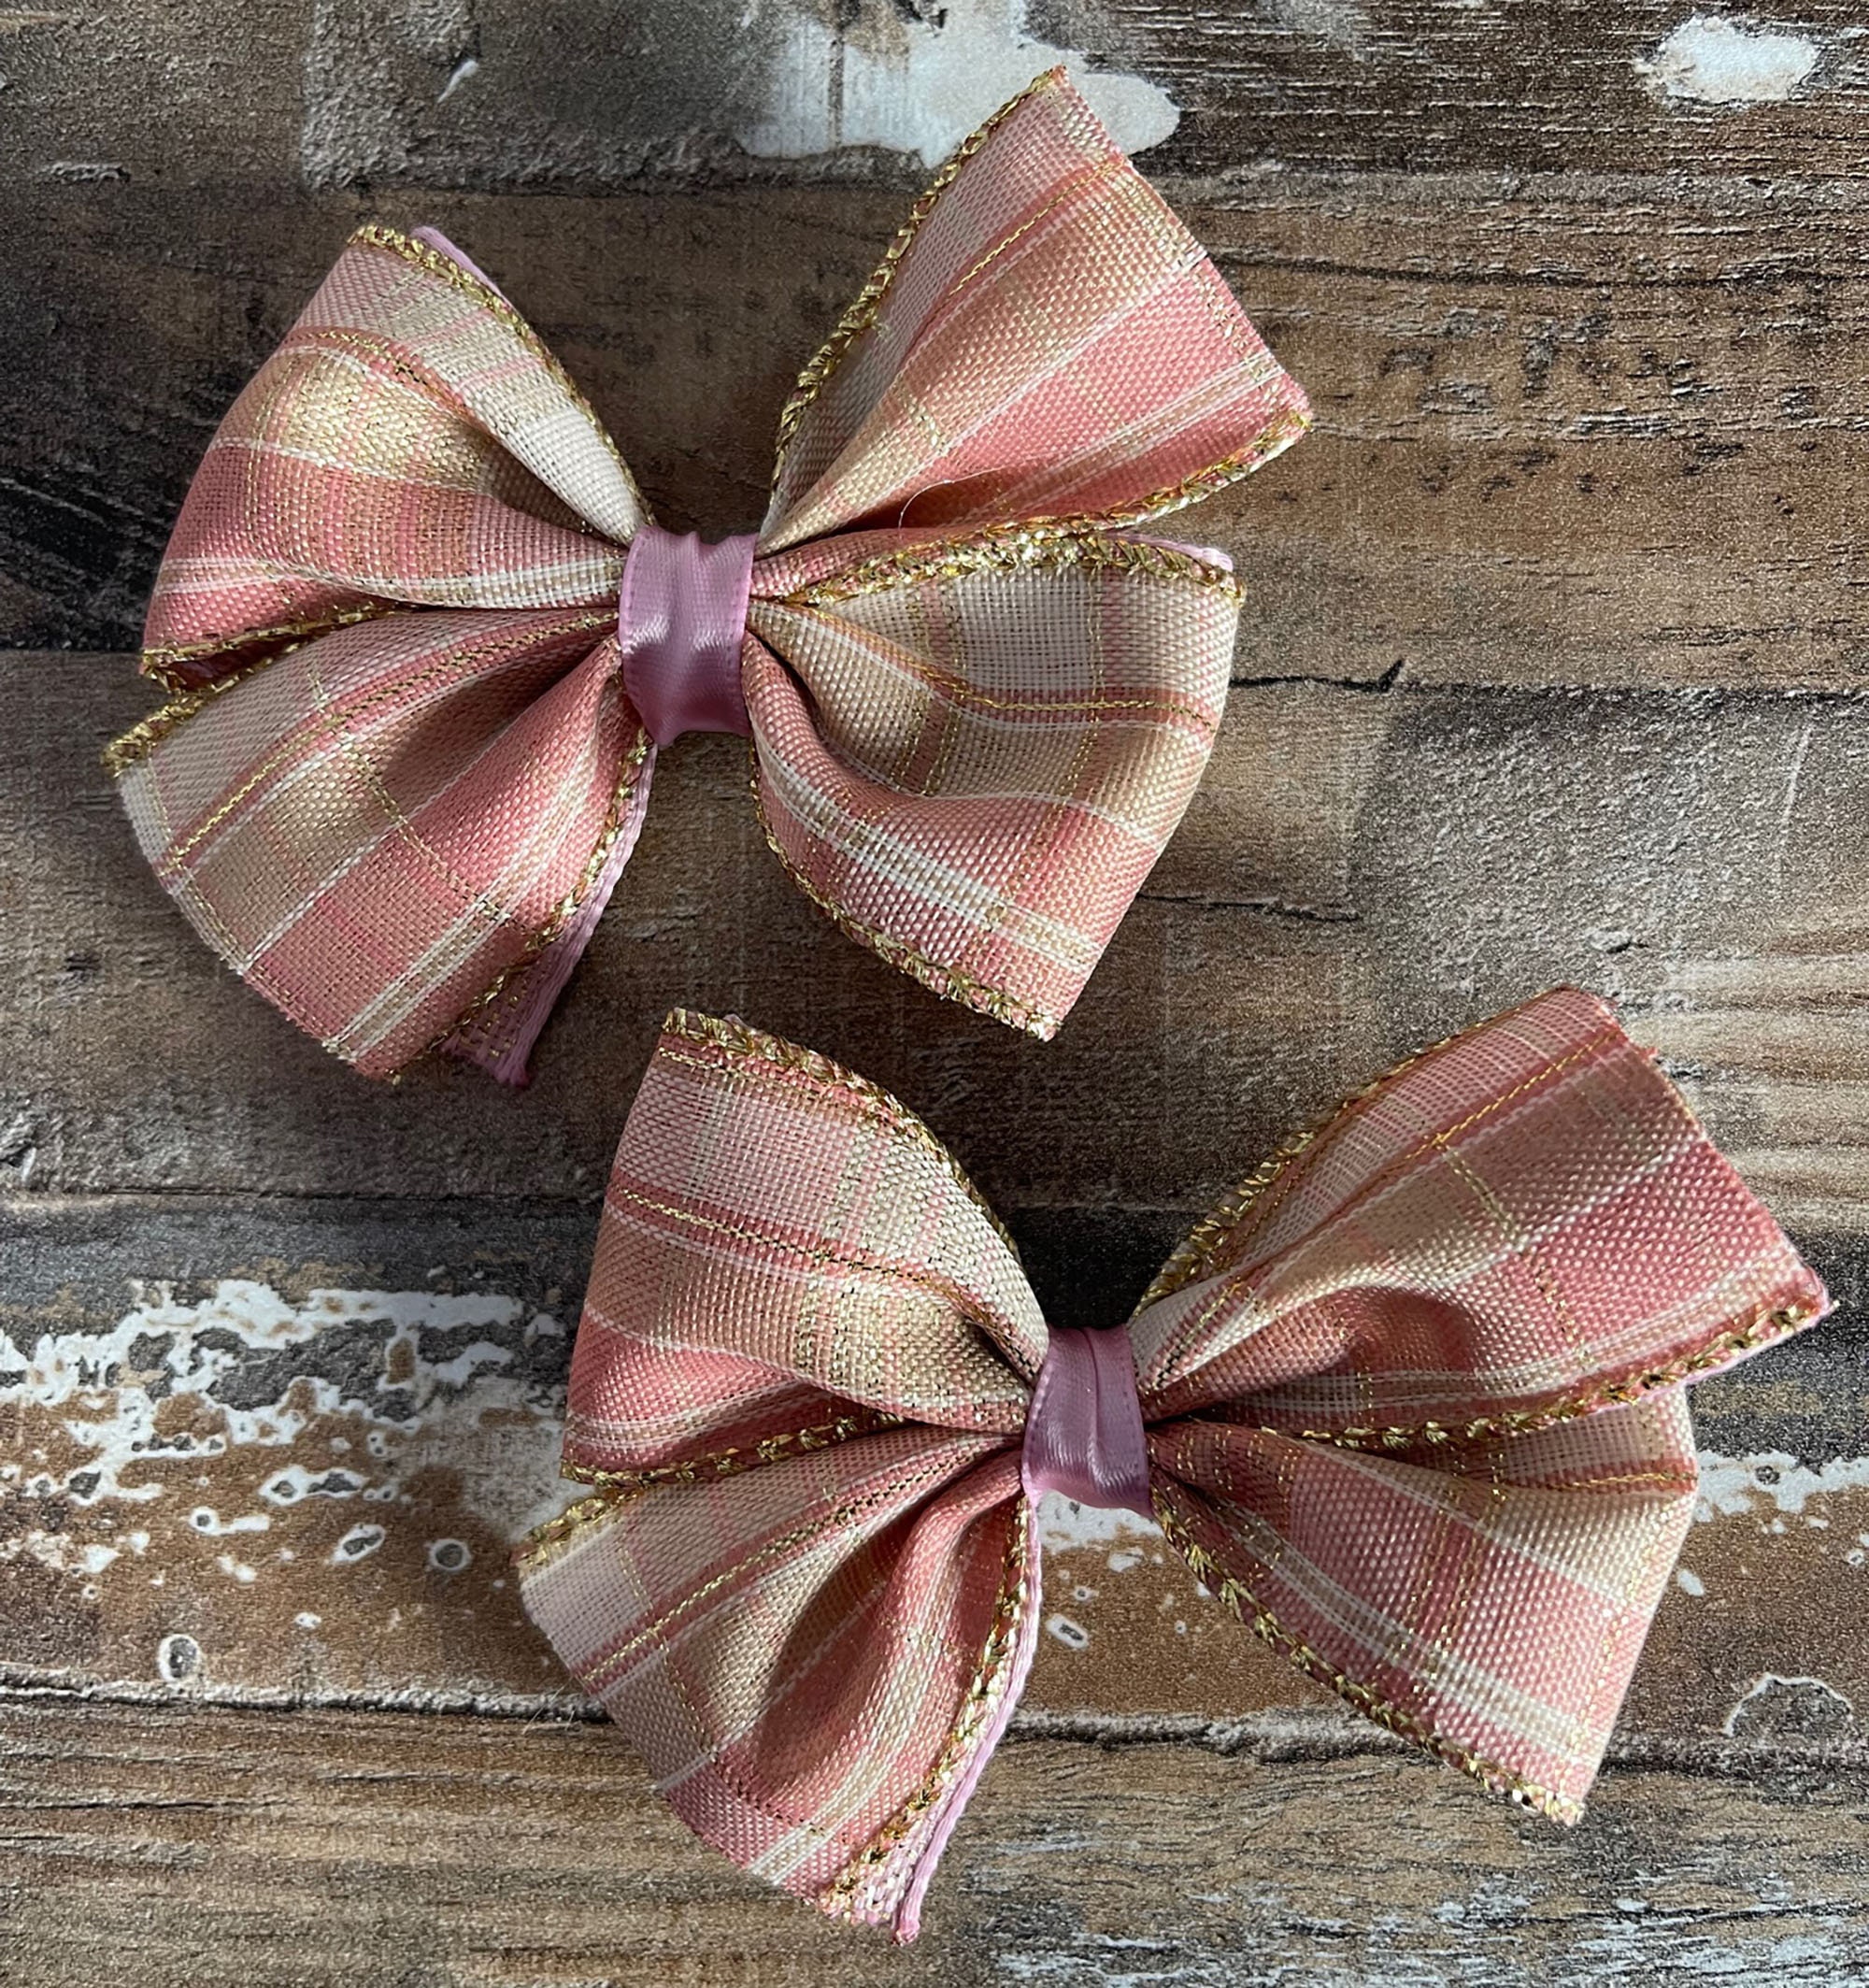 Pink Satin Ribbon Bow Ties / Double Ribbon Bows / Fabric Bowties